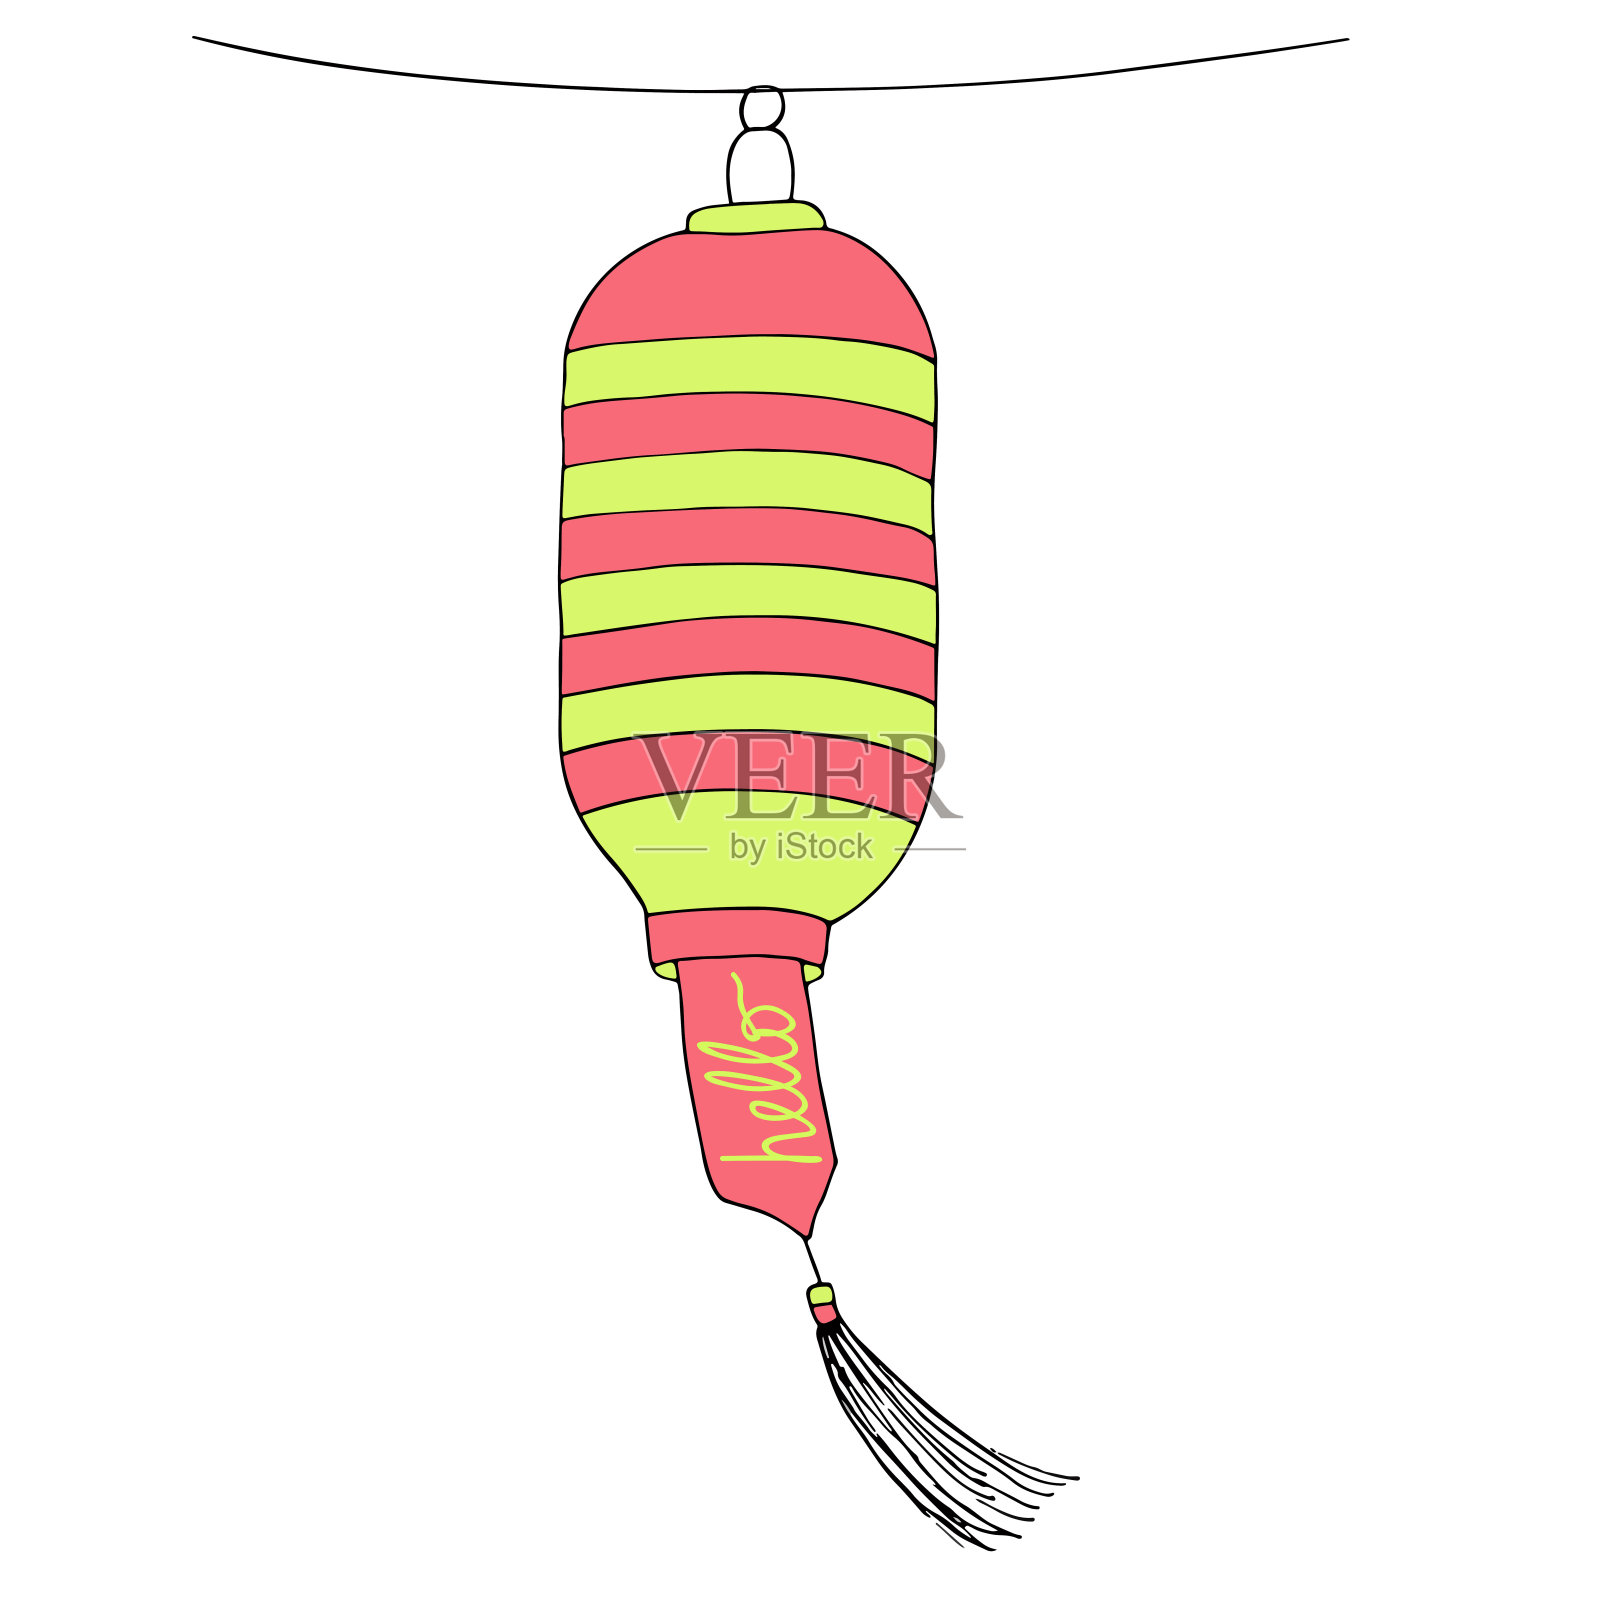 用绳子挂着“你好”标志的装饰灯笼。受欢迎的追梦人。矢量手绘草图插画图片素材